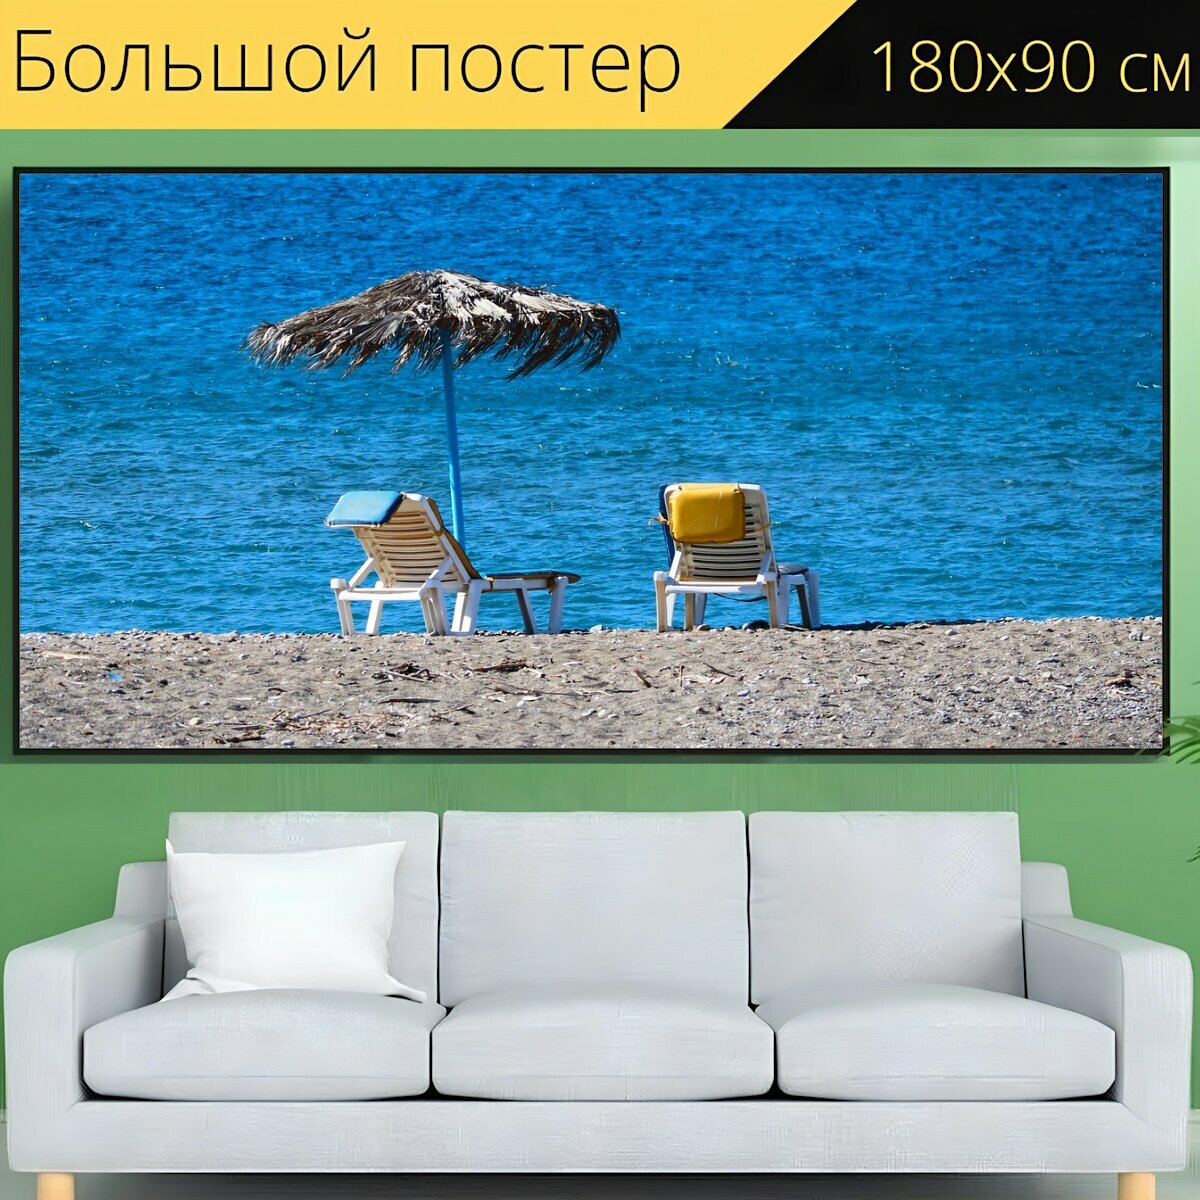 Большой постер "Пляж, шезлонги, зонтик" 180 x 90 см. для интерьера